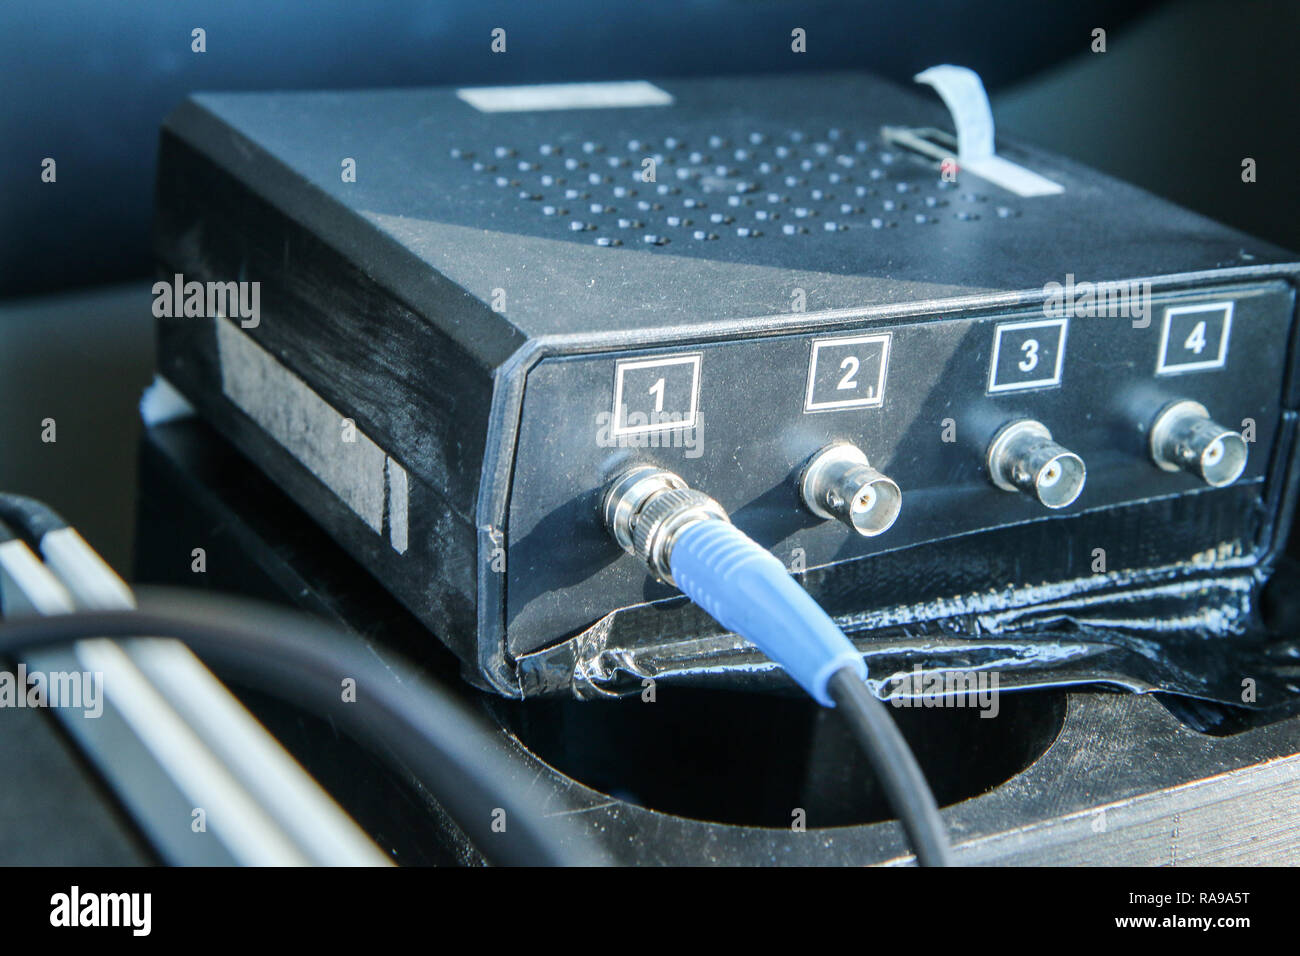 Das Bild zeigt einen Teil der elektronischen Messtechnik zur Messung der Dynamik des Fahrzeugs. Jede Menge Kabel. Stockfoto